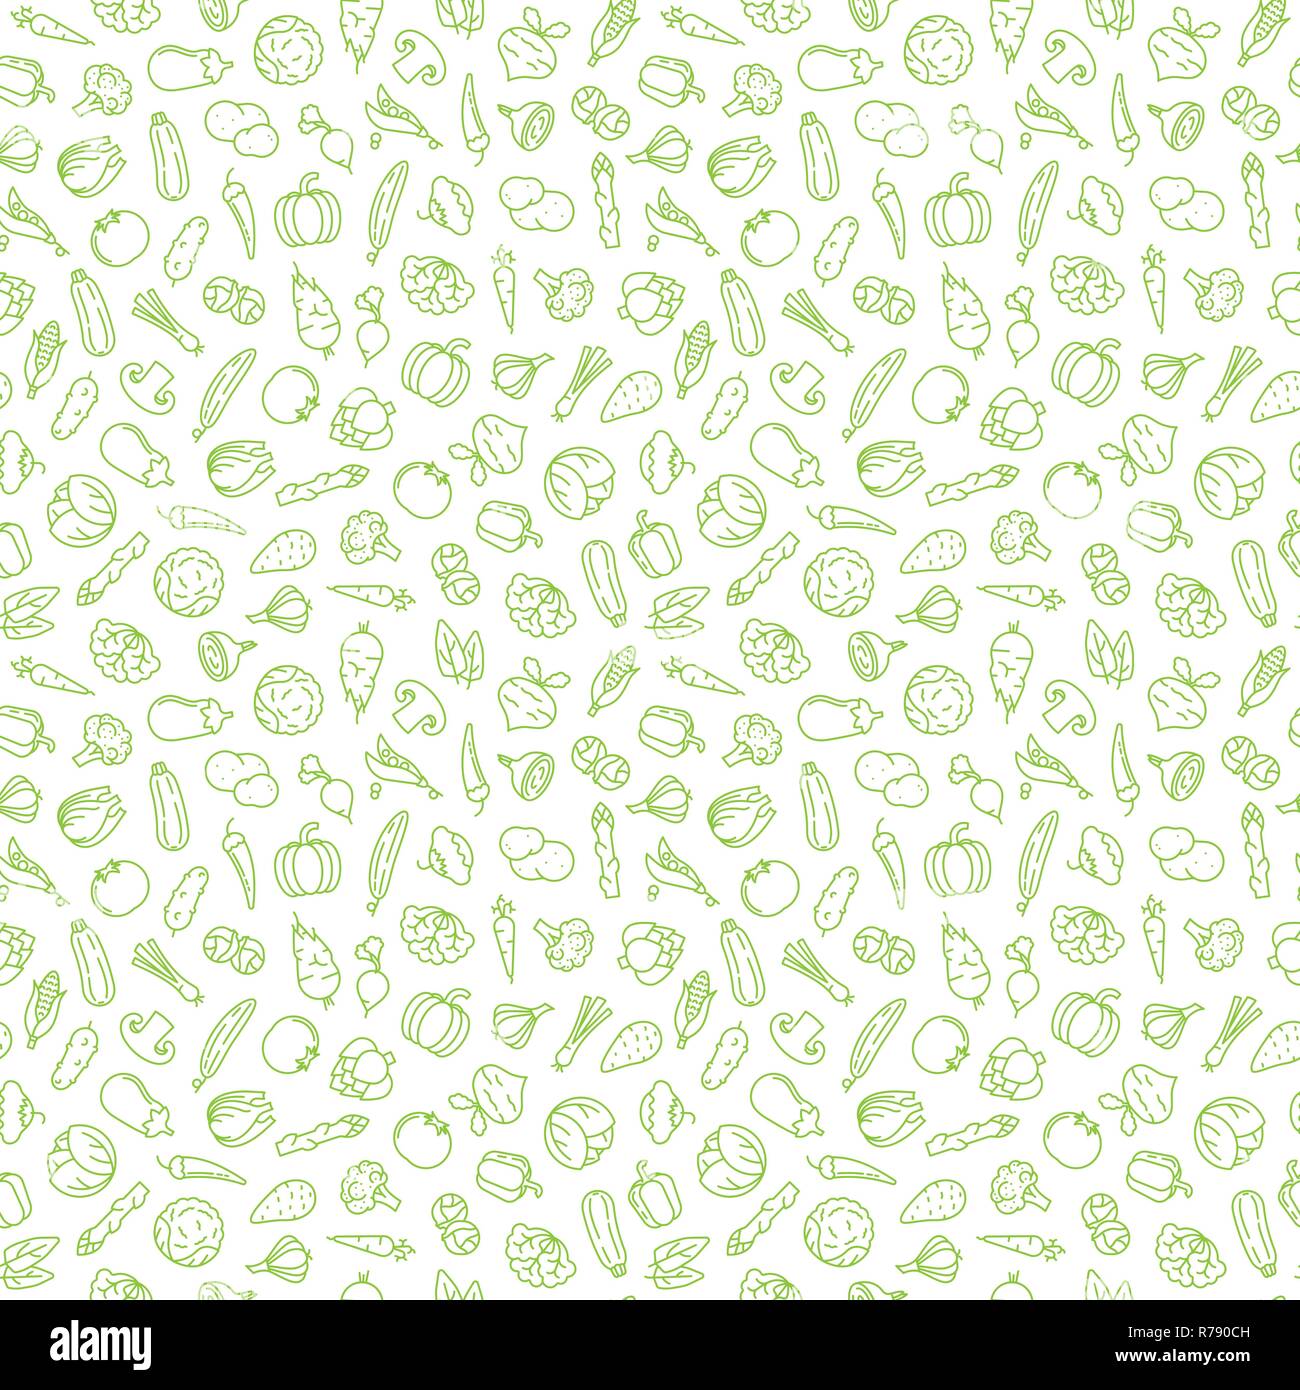 Nahtlose Hintergrund mit verschiedenen pflanzlichen Icons, grüne Symbole auf transparentem Hintergrund Vector Illustration Stock Vektor